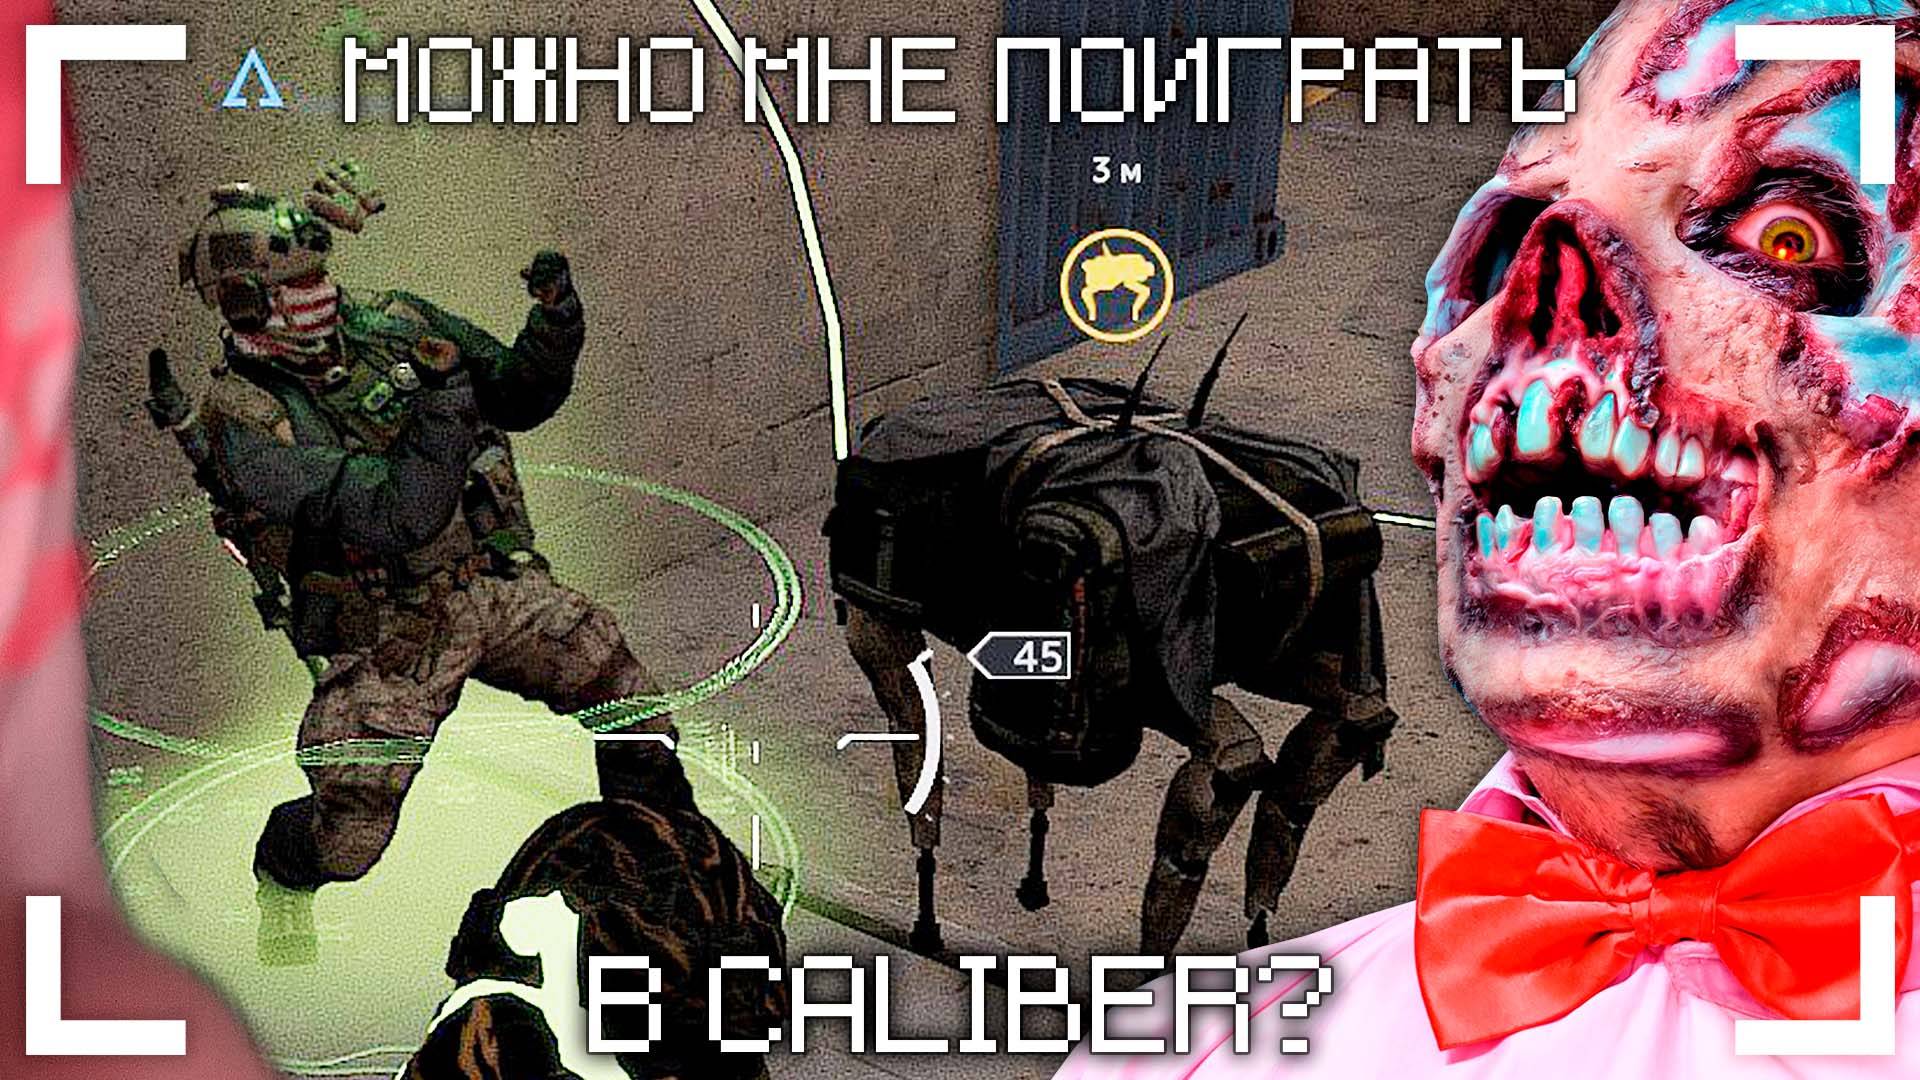 CALIBER – ЗАКАЗАЛ ДЕГТЯРНОЕ МЫЛО / РЕЖИМ" ФРОНТ" / ЖДЕМ ЛЕНЕНДАРОК НА КАЗАХОВ!!!